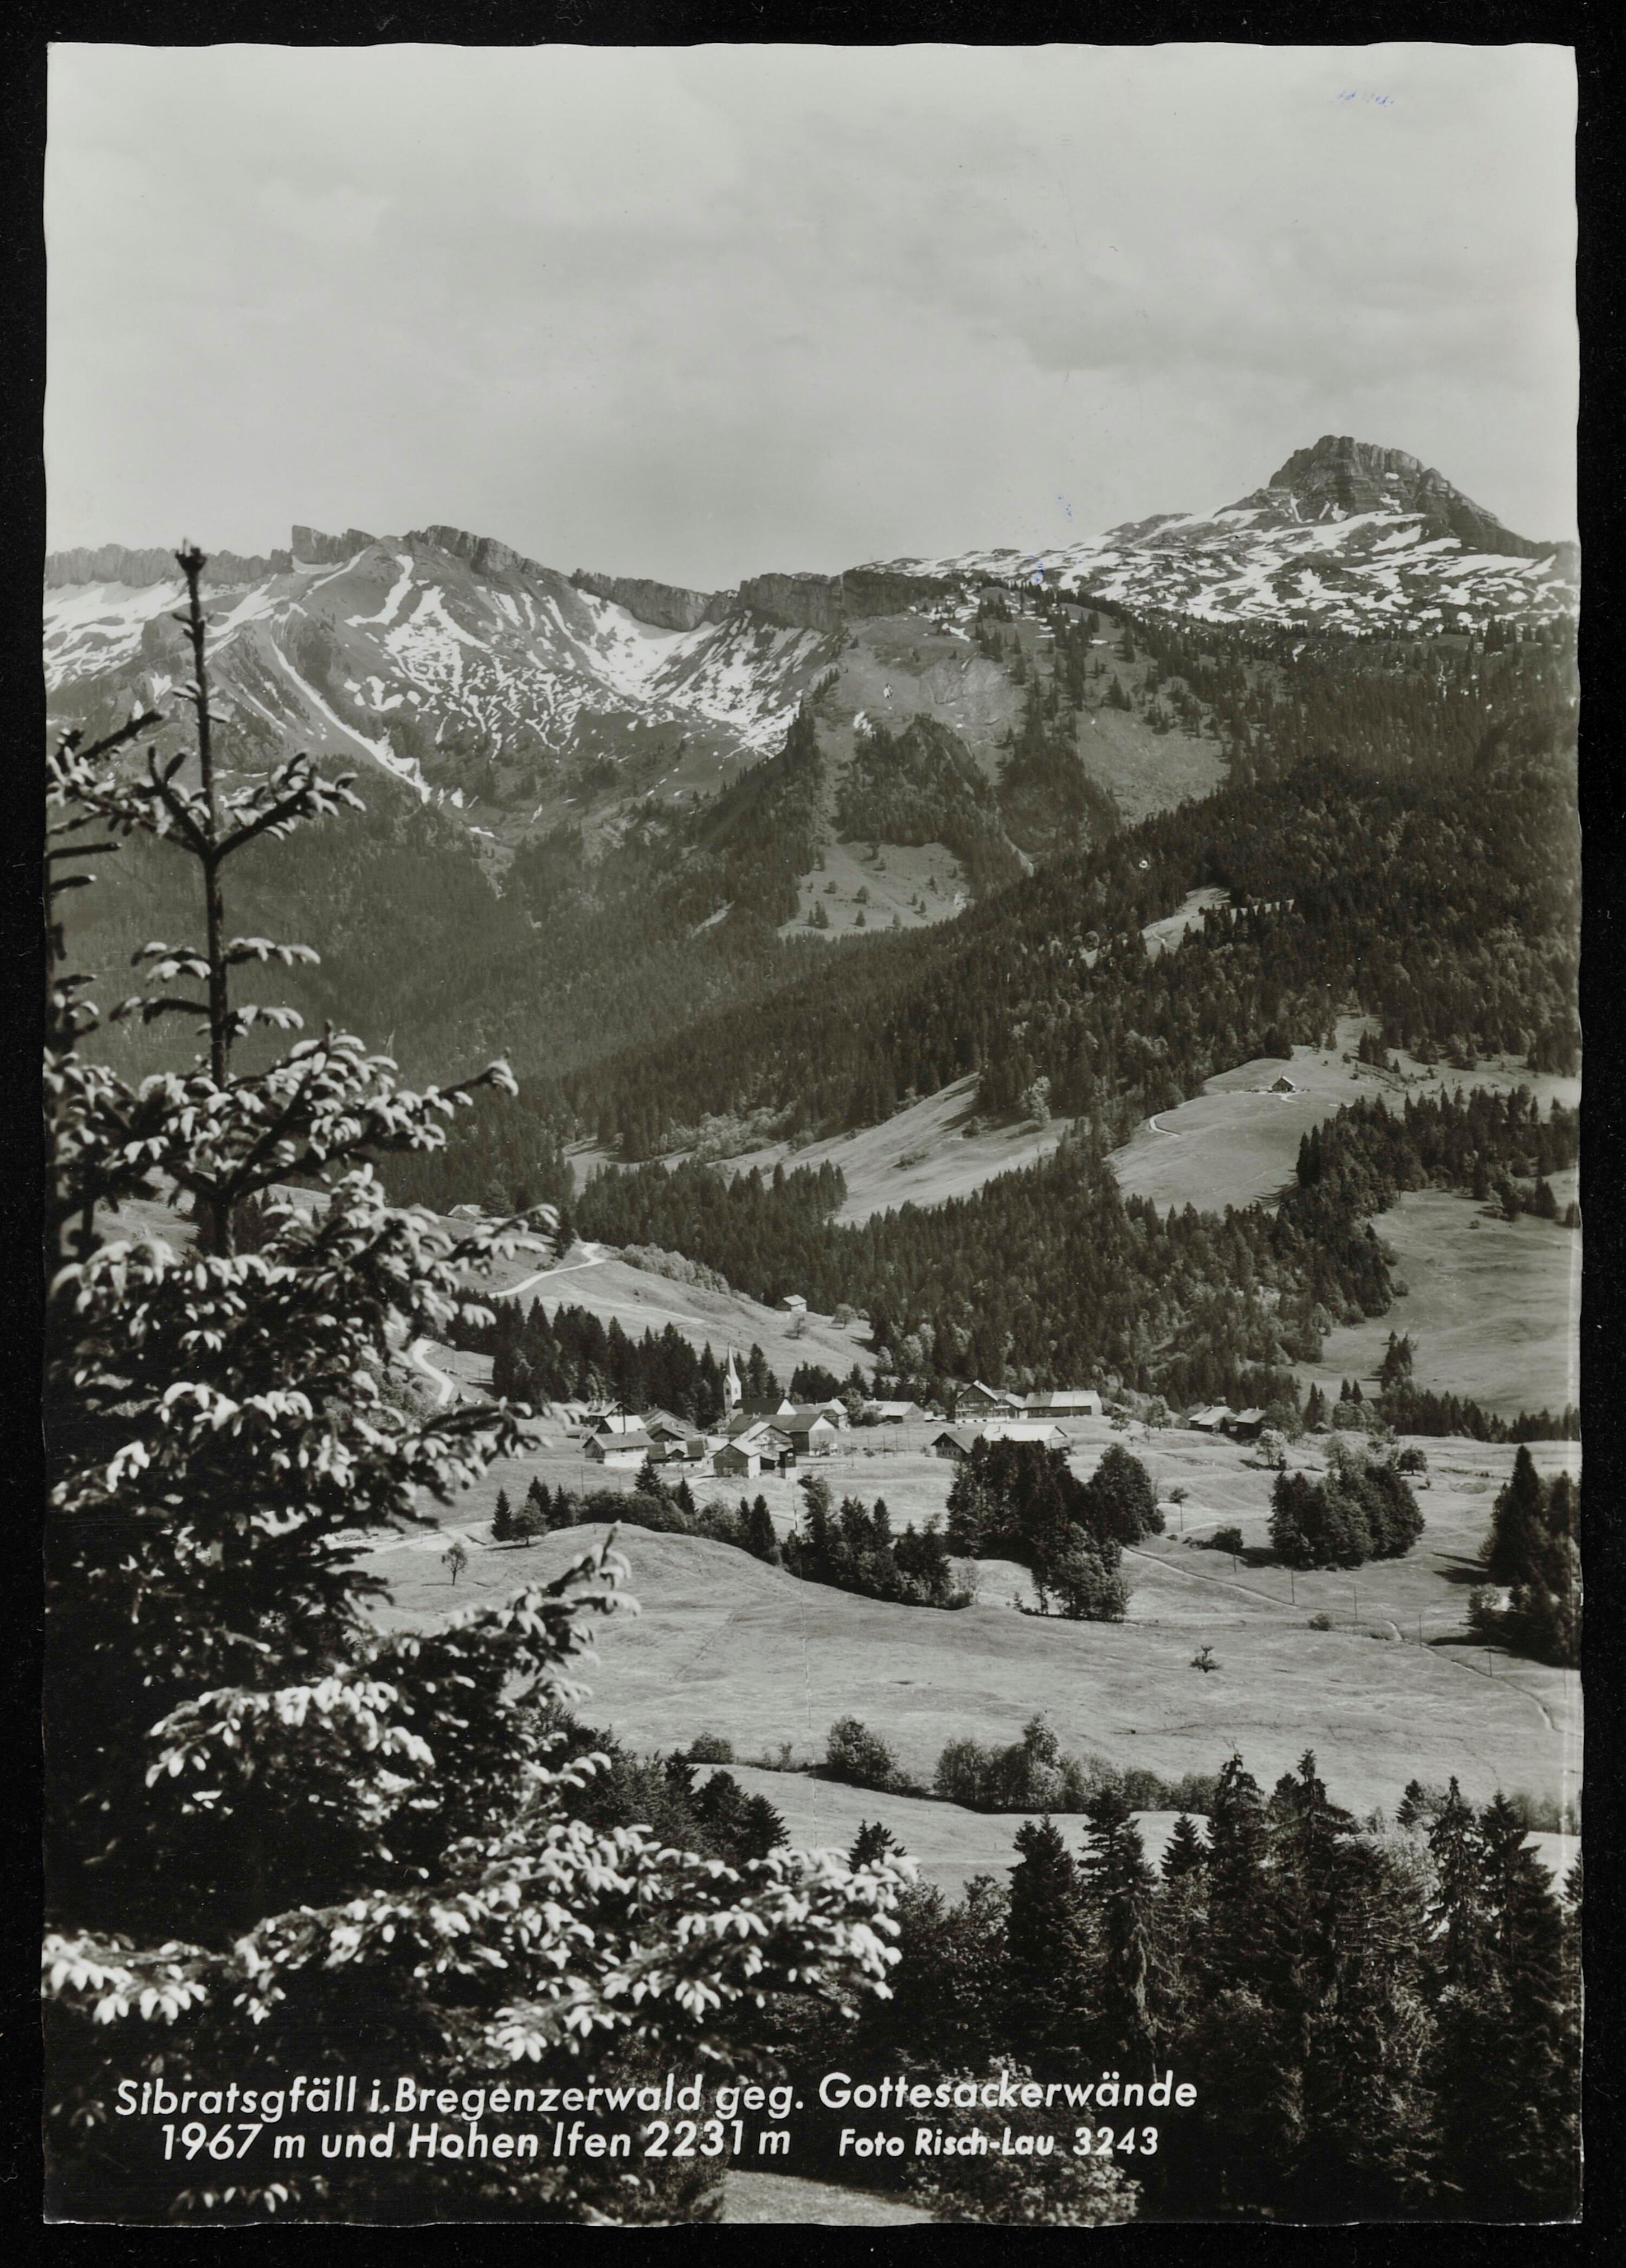 Sibratsgfäll i. Bregenzerwald geg. Gottesackerwände 1967 m und Hohen Ifen 2231 m></div>


    <hr>
    <div class=